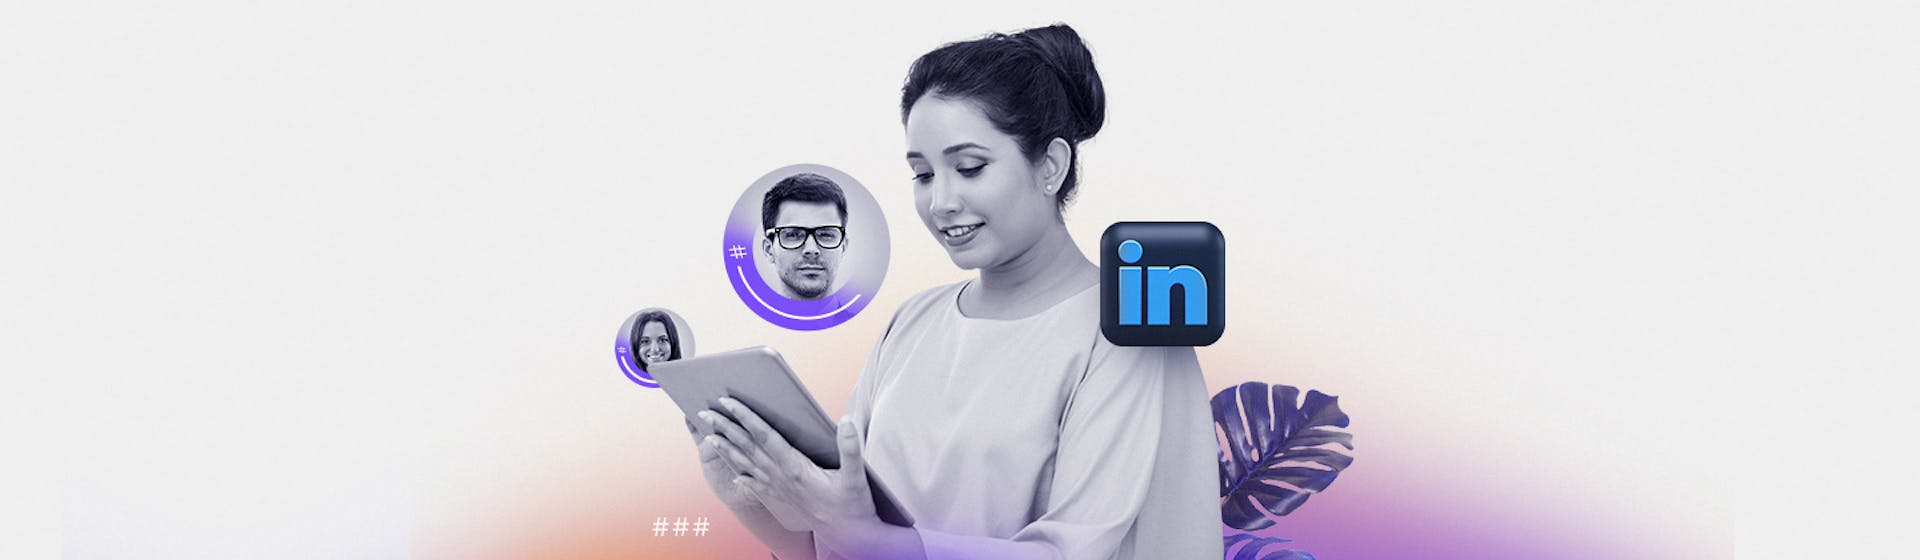 LinkedIn para empresas ¡Visibiliza tu marca ante profesionales en la web!